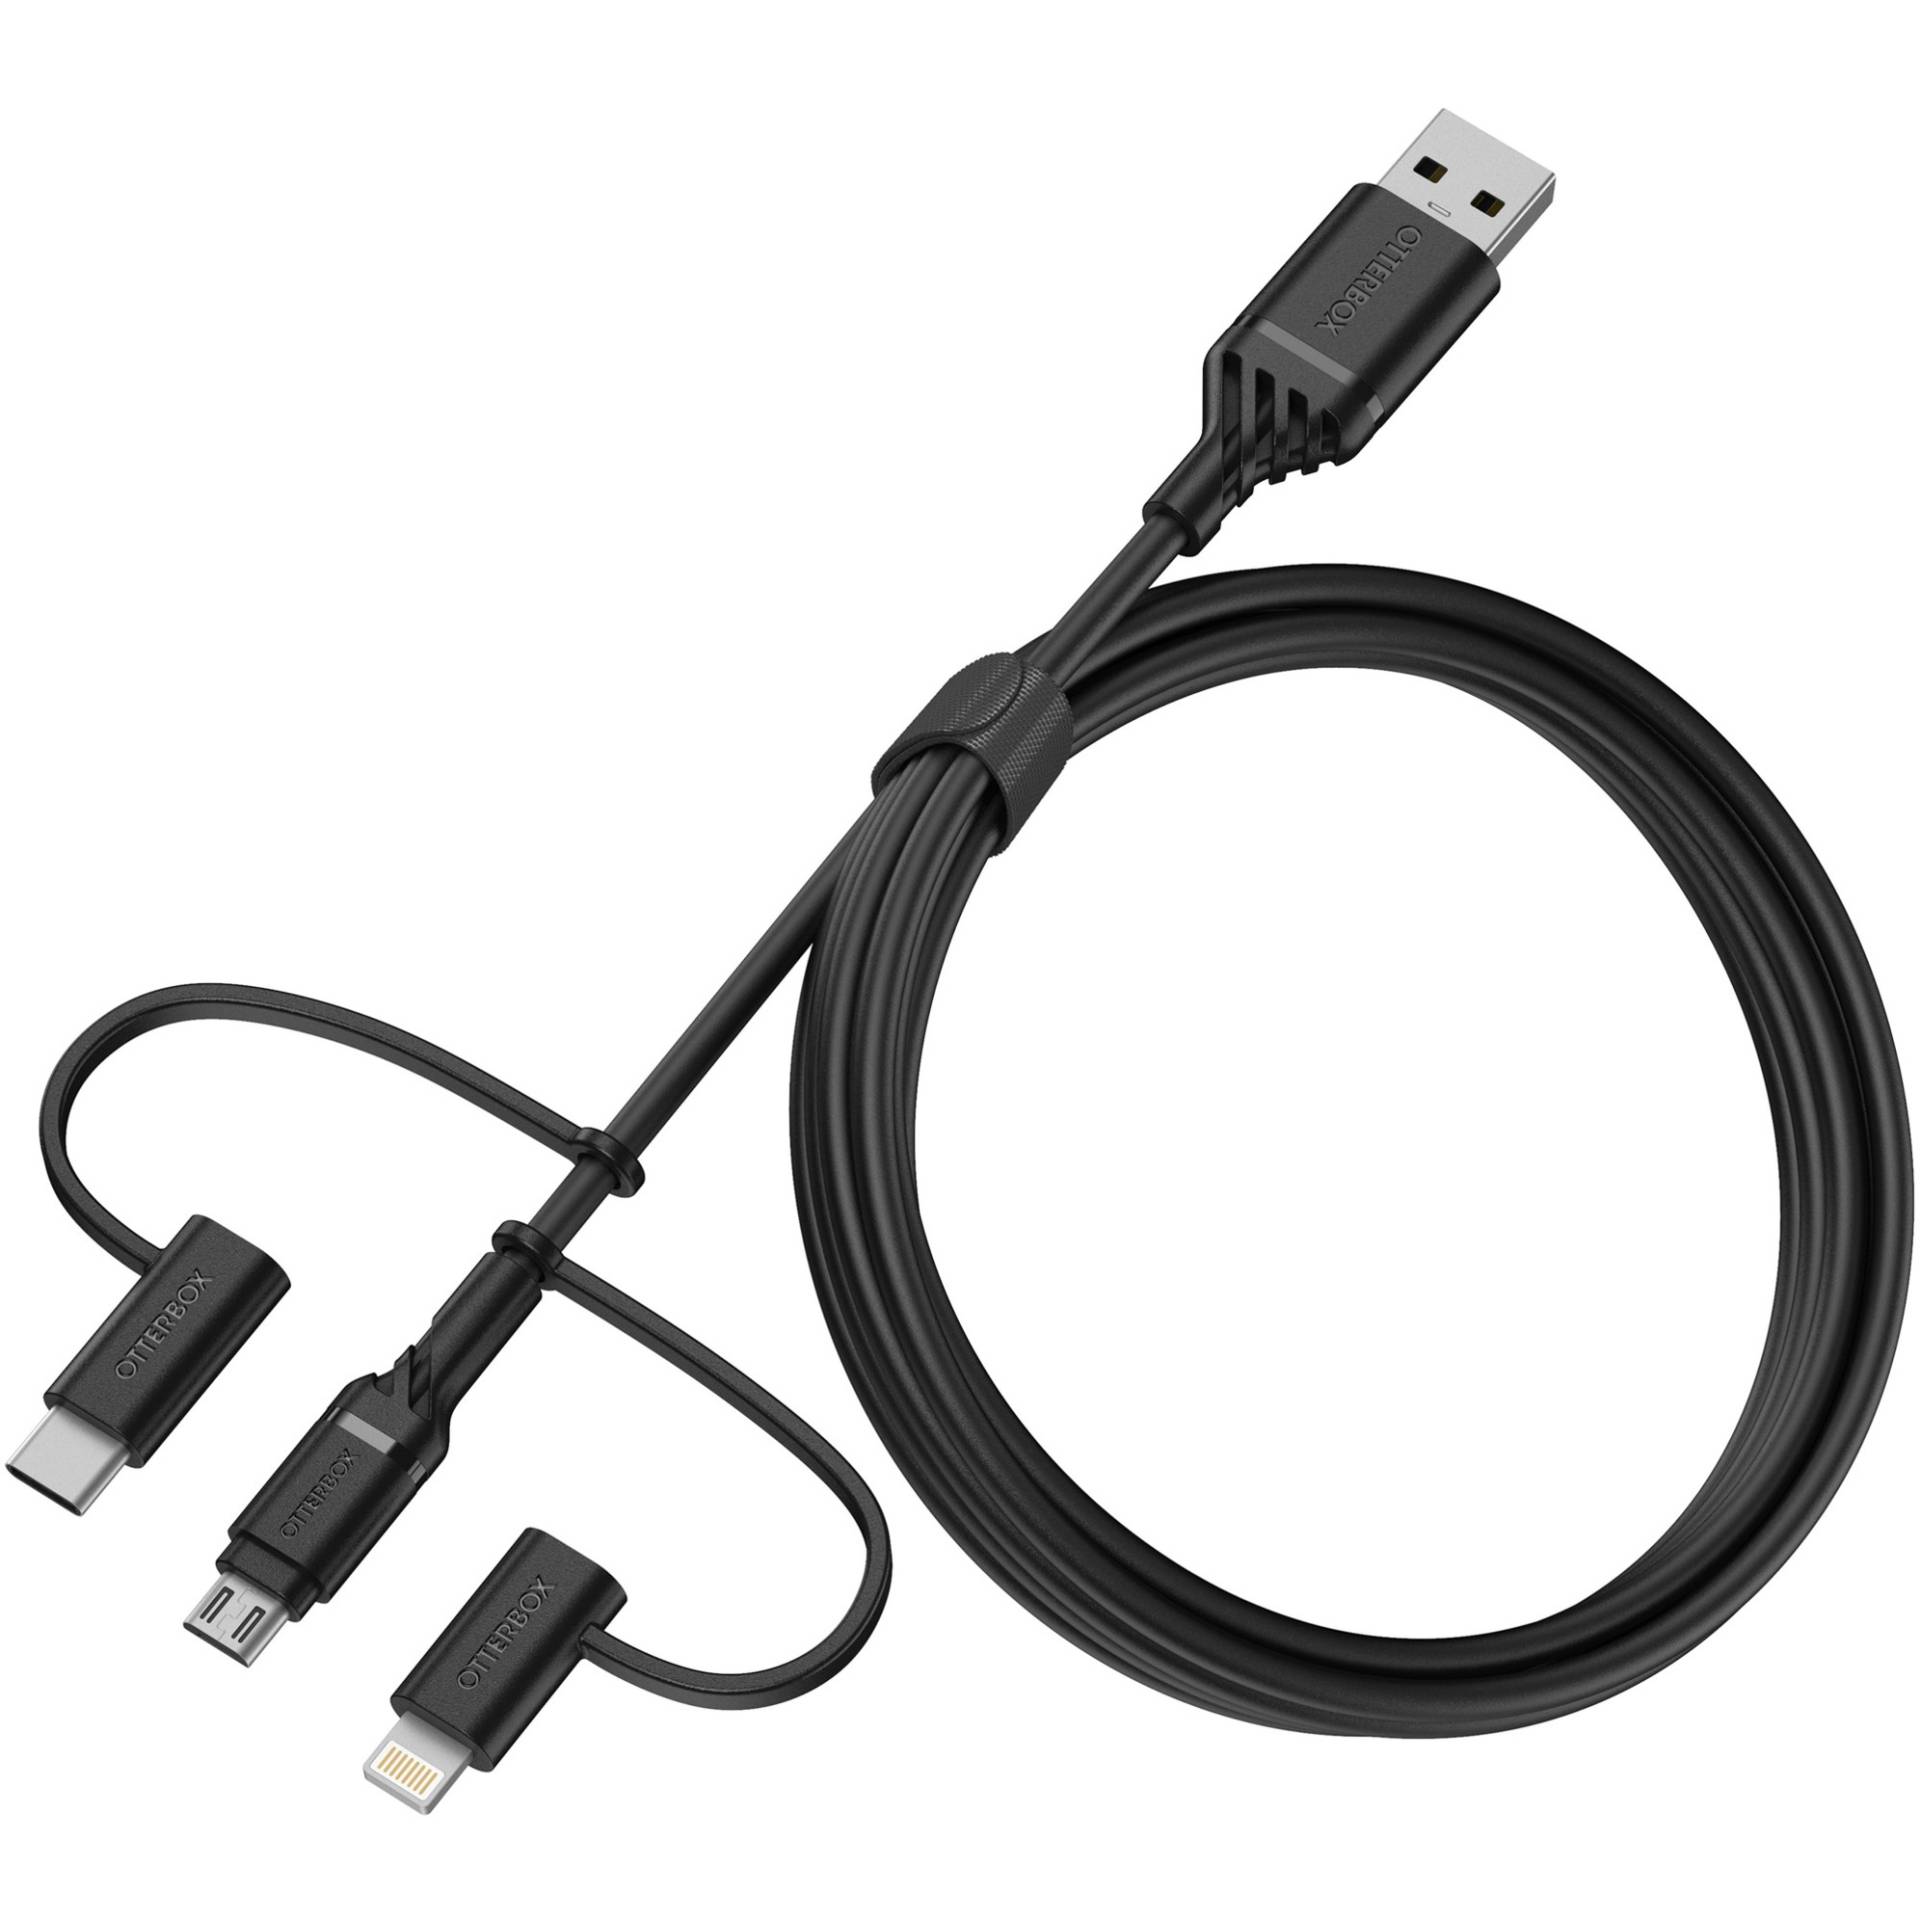 USB 2.0 Kabel, USB-A Stecker > Micro-USB + USB-C + Lightning Stecker von OtterBox